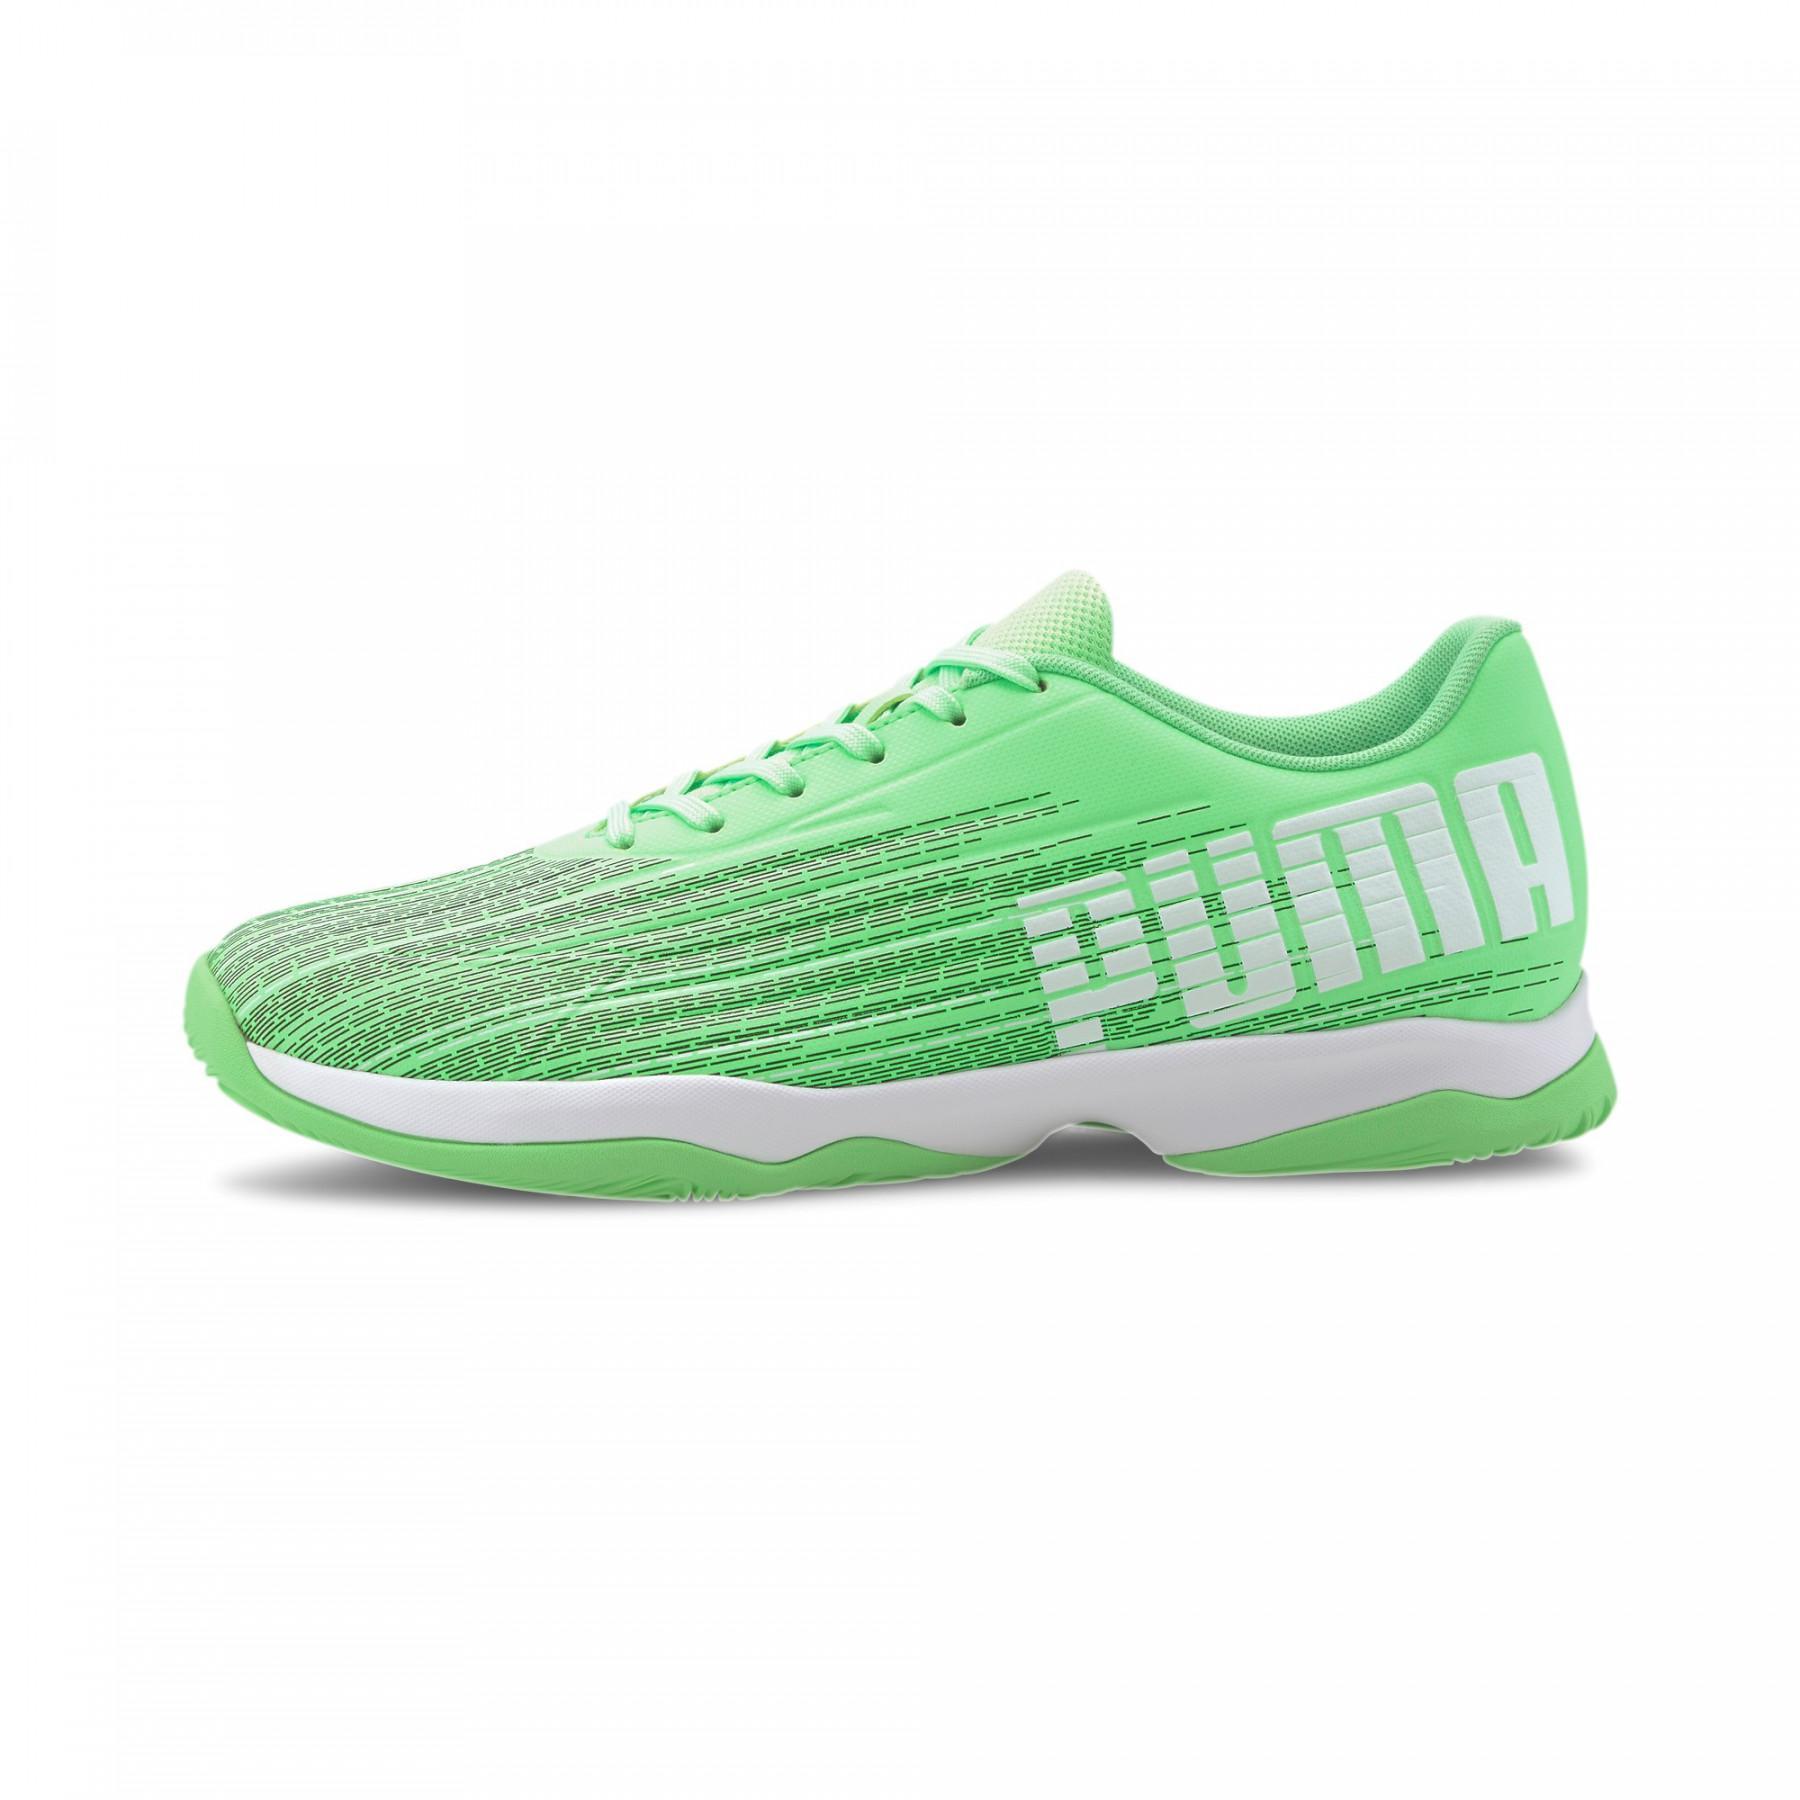 Sapatos Puma Adrenalite 4.1